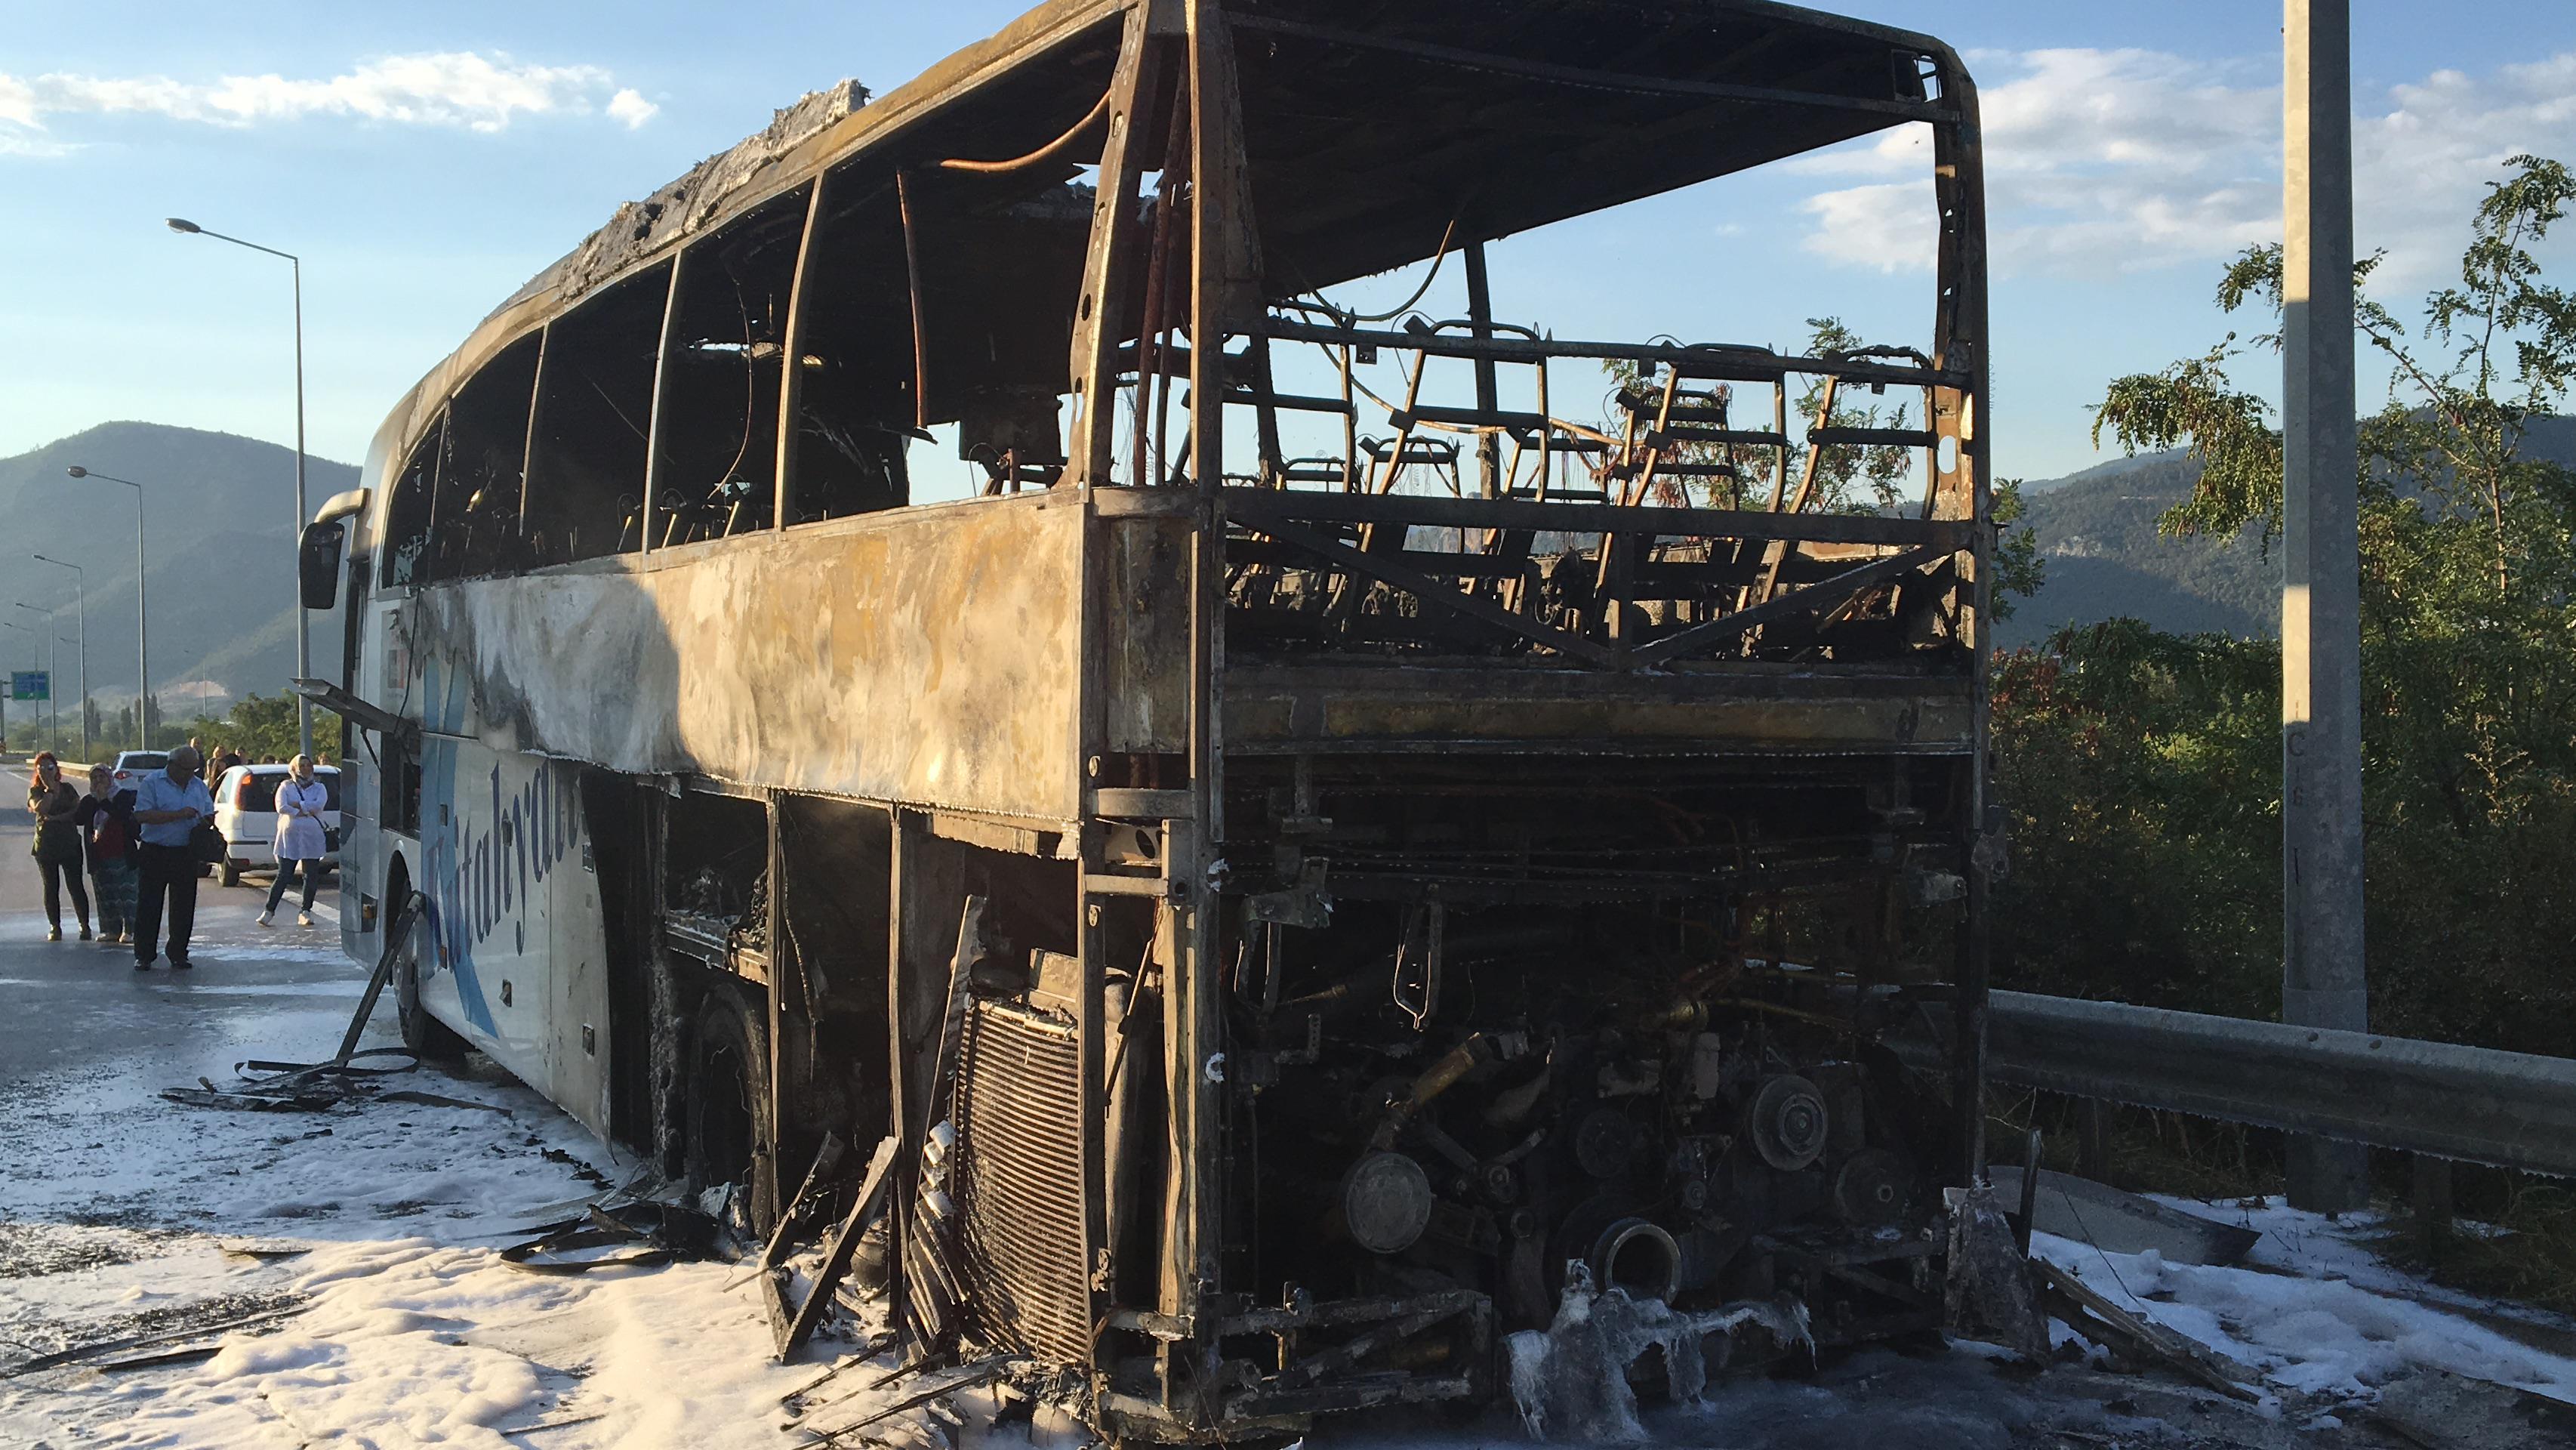 Kütahyada yolcu otobüsü alev alev yandı